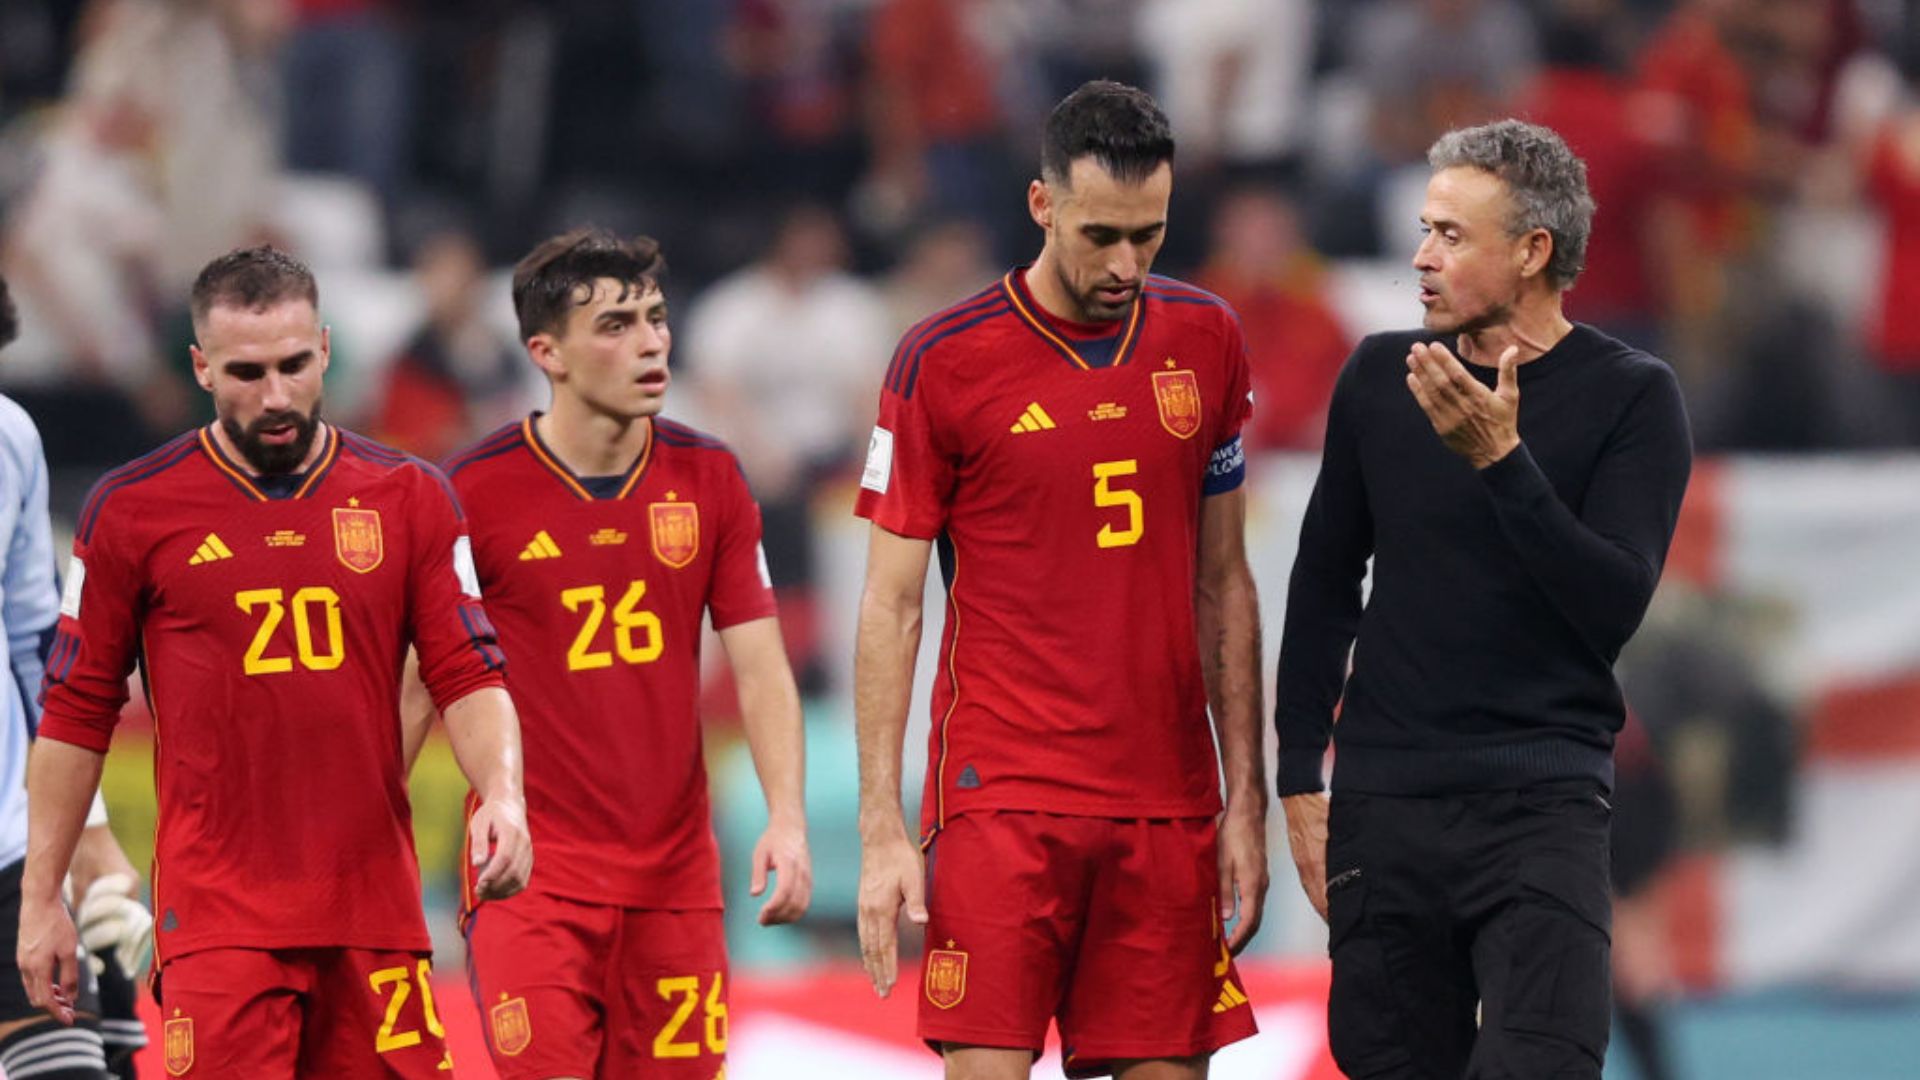 Espanha abre o placar, mas sofre empate da Alemanha em clássico na